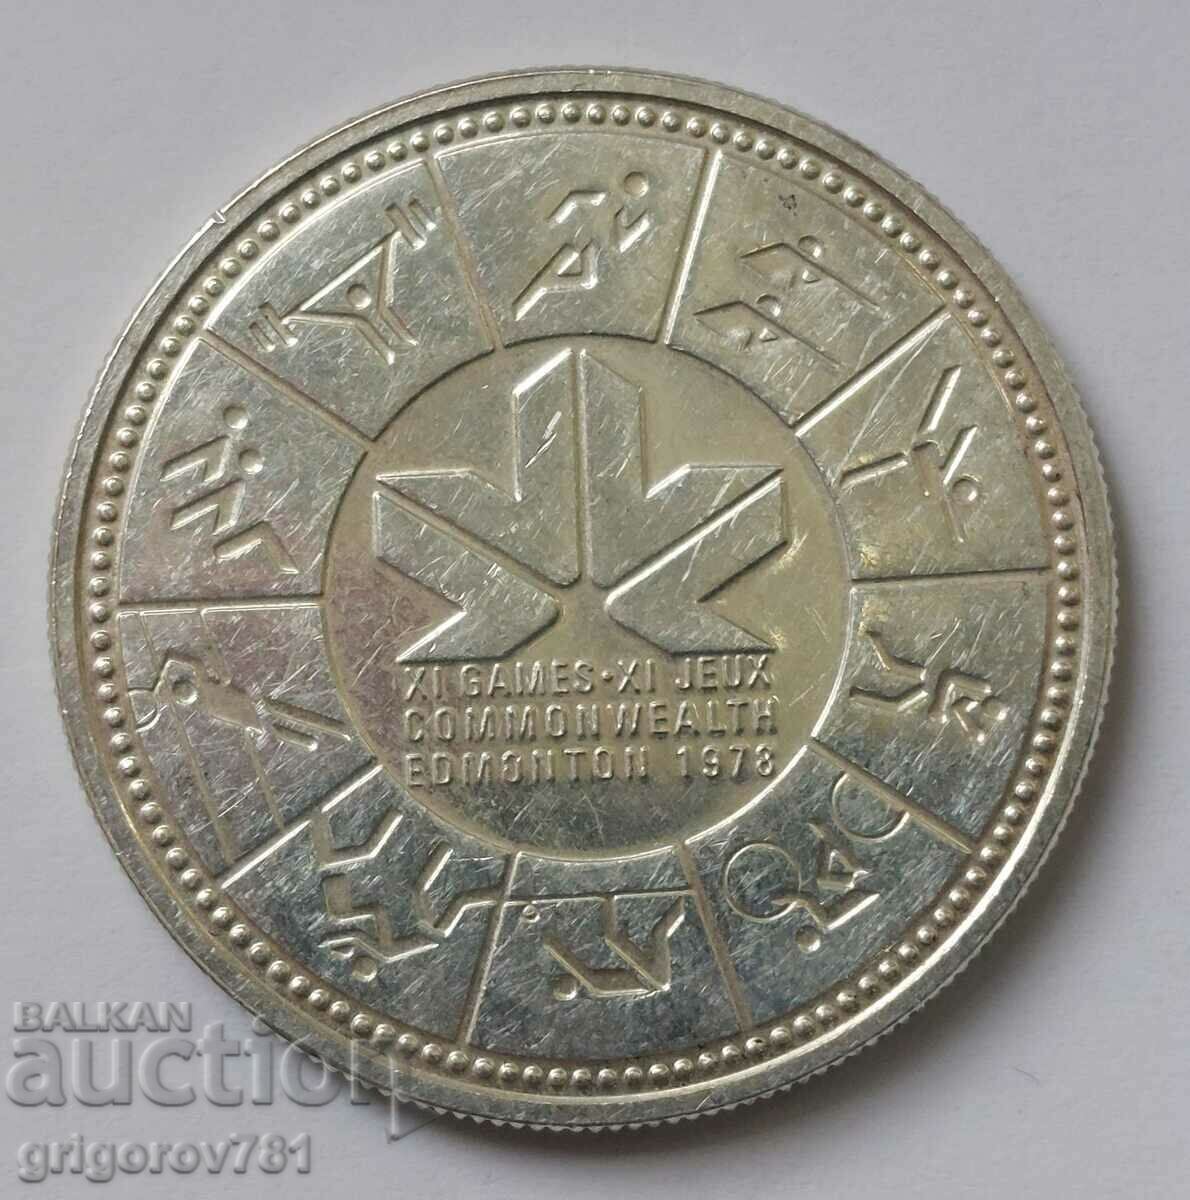 1 долар сребро Канада 1978  - сребърна монета